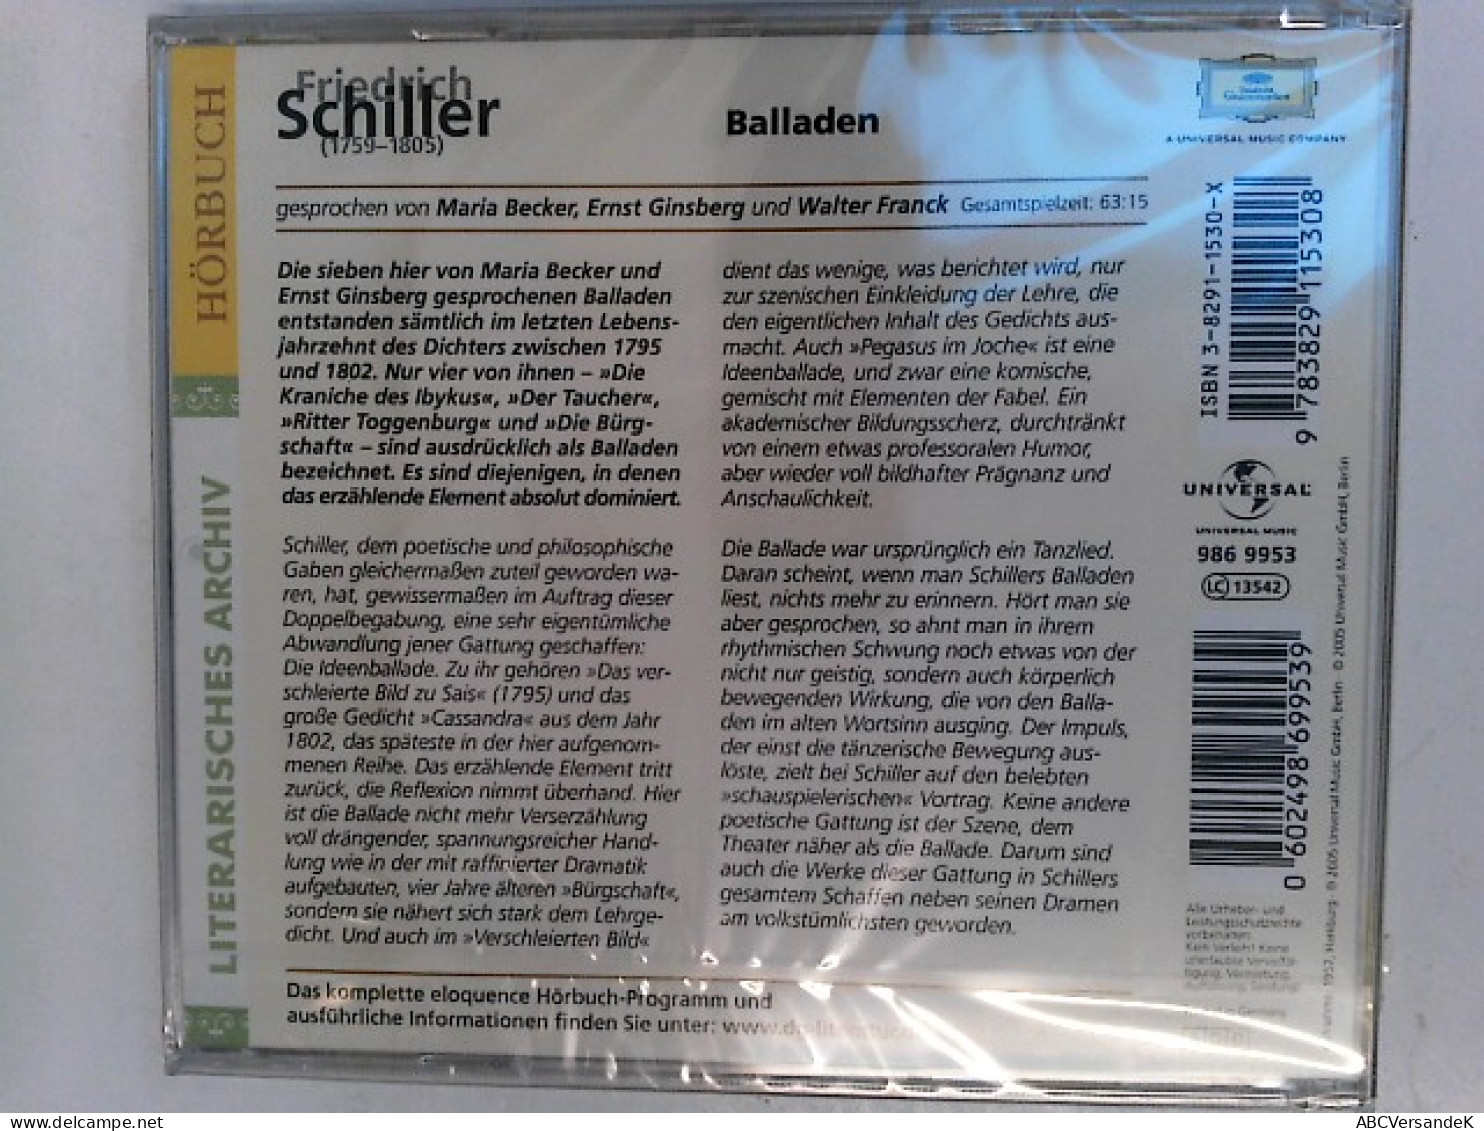 Friedrich Schiller: Balladen (Eloquence Hörbuch) - CDs